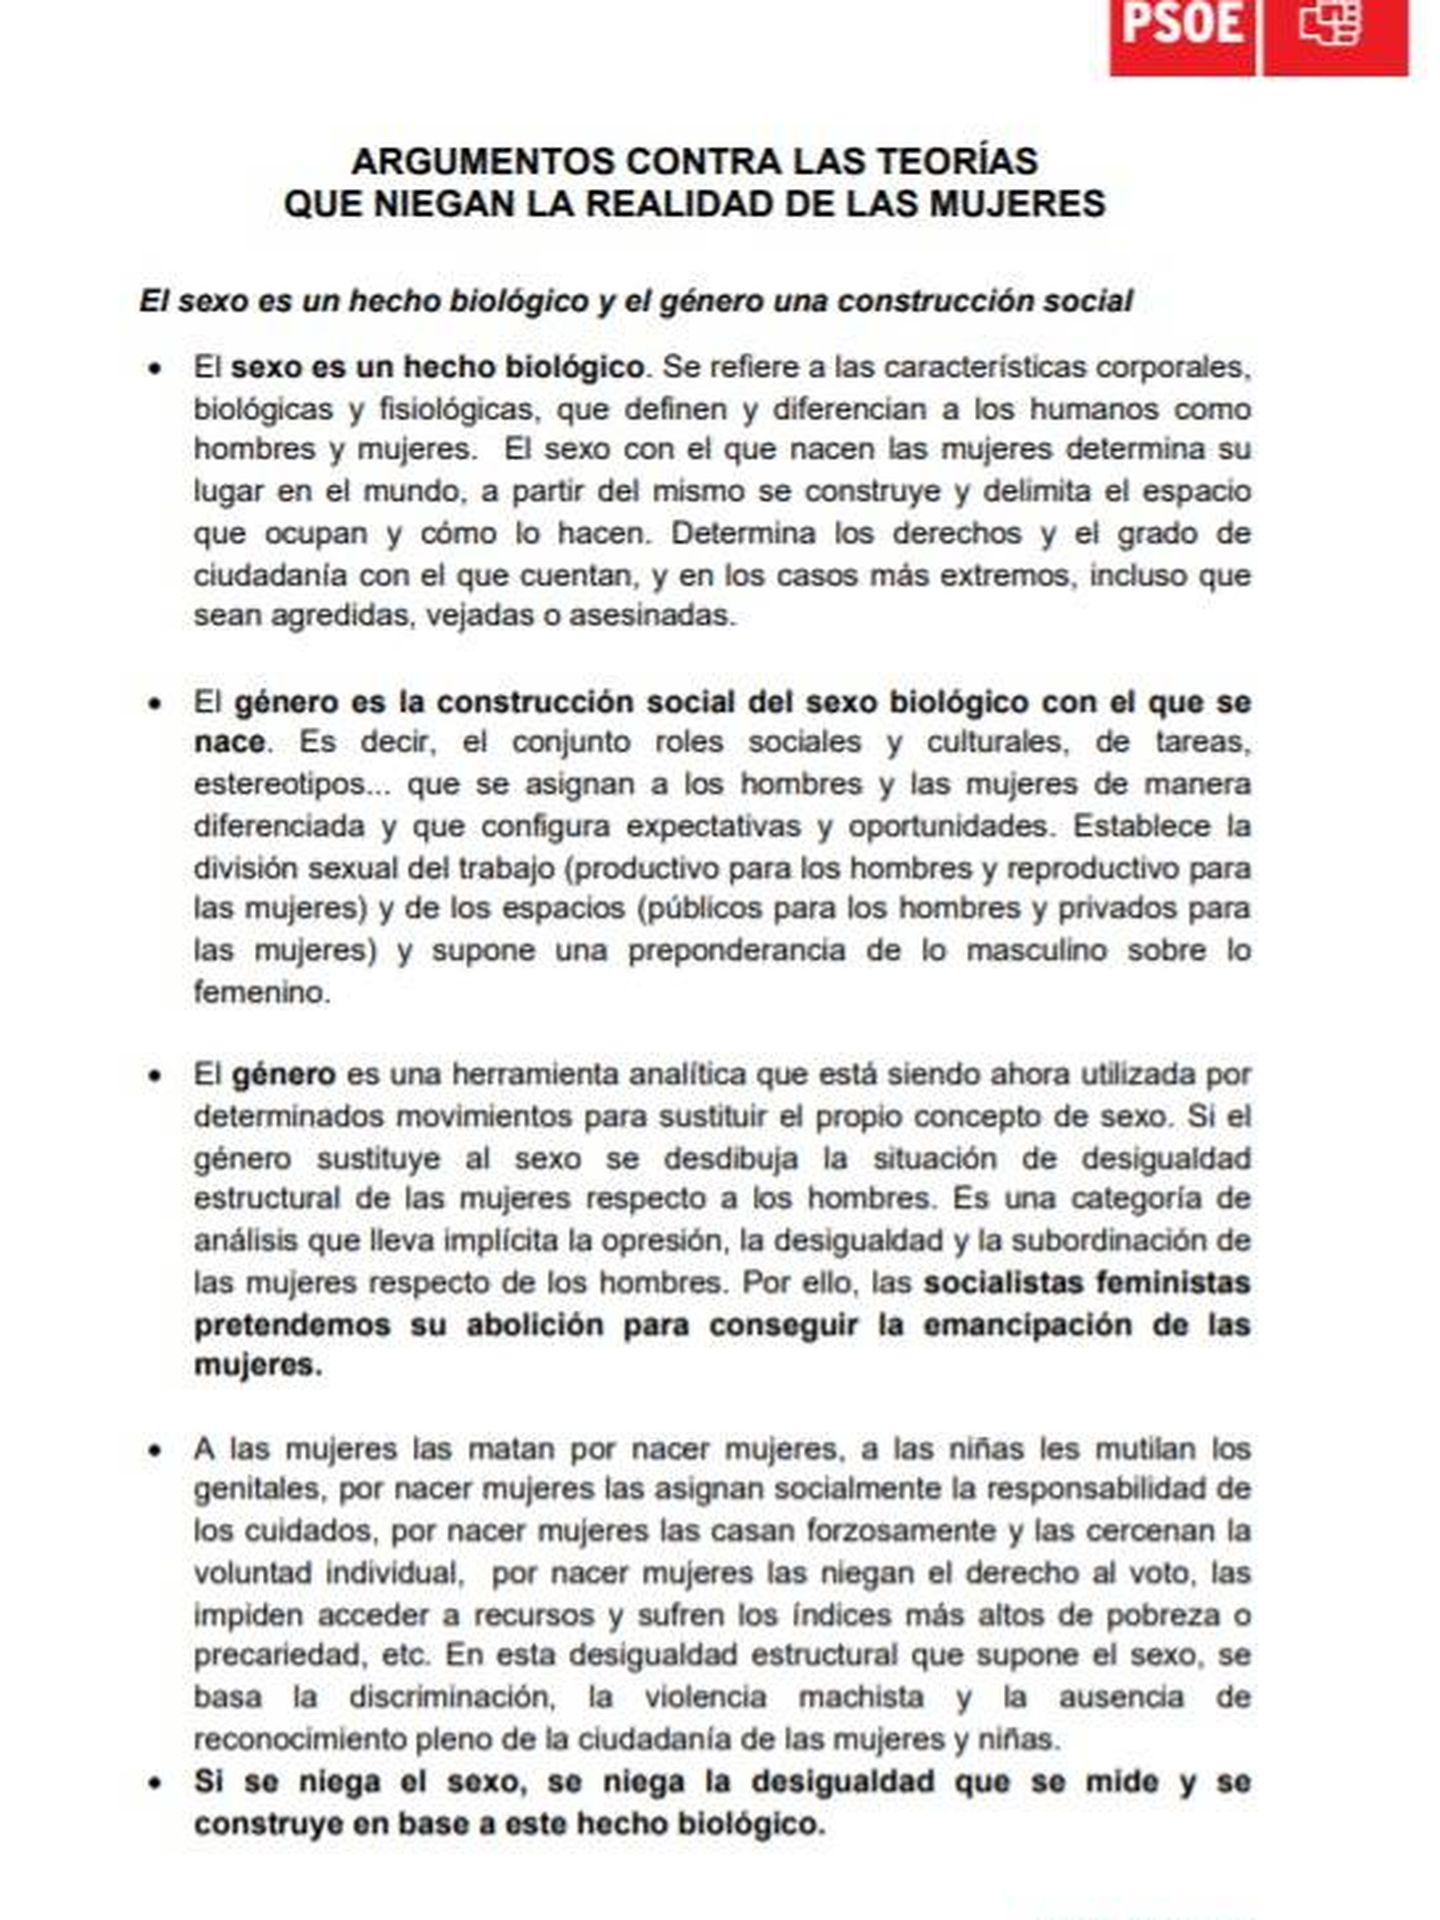 Consulte aquí en PDF el argumentario feminista del PSOE contra la teoría 'queer'.